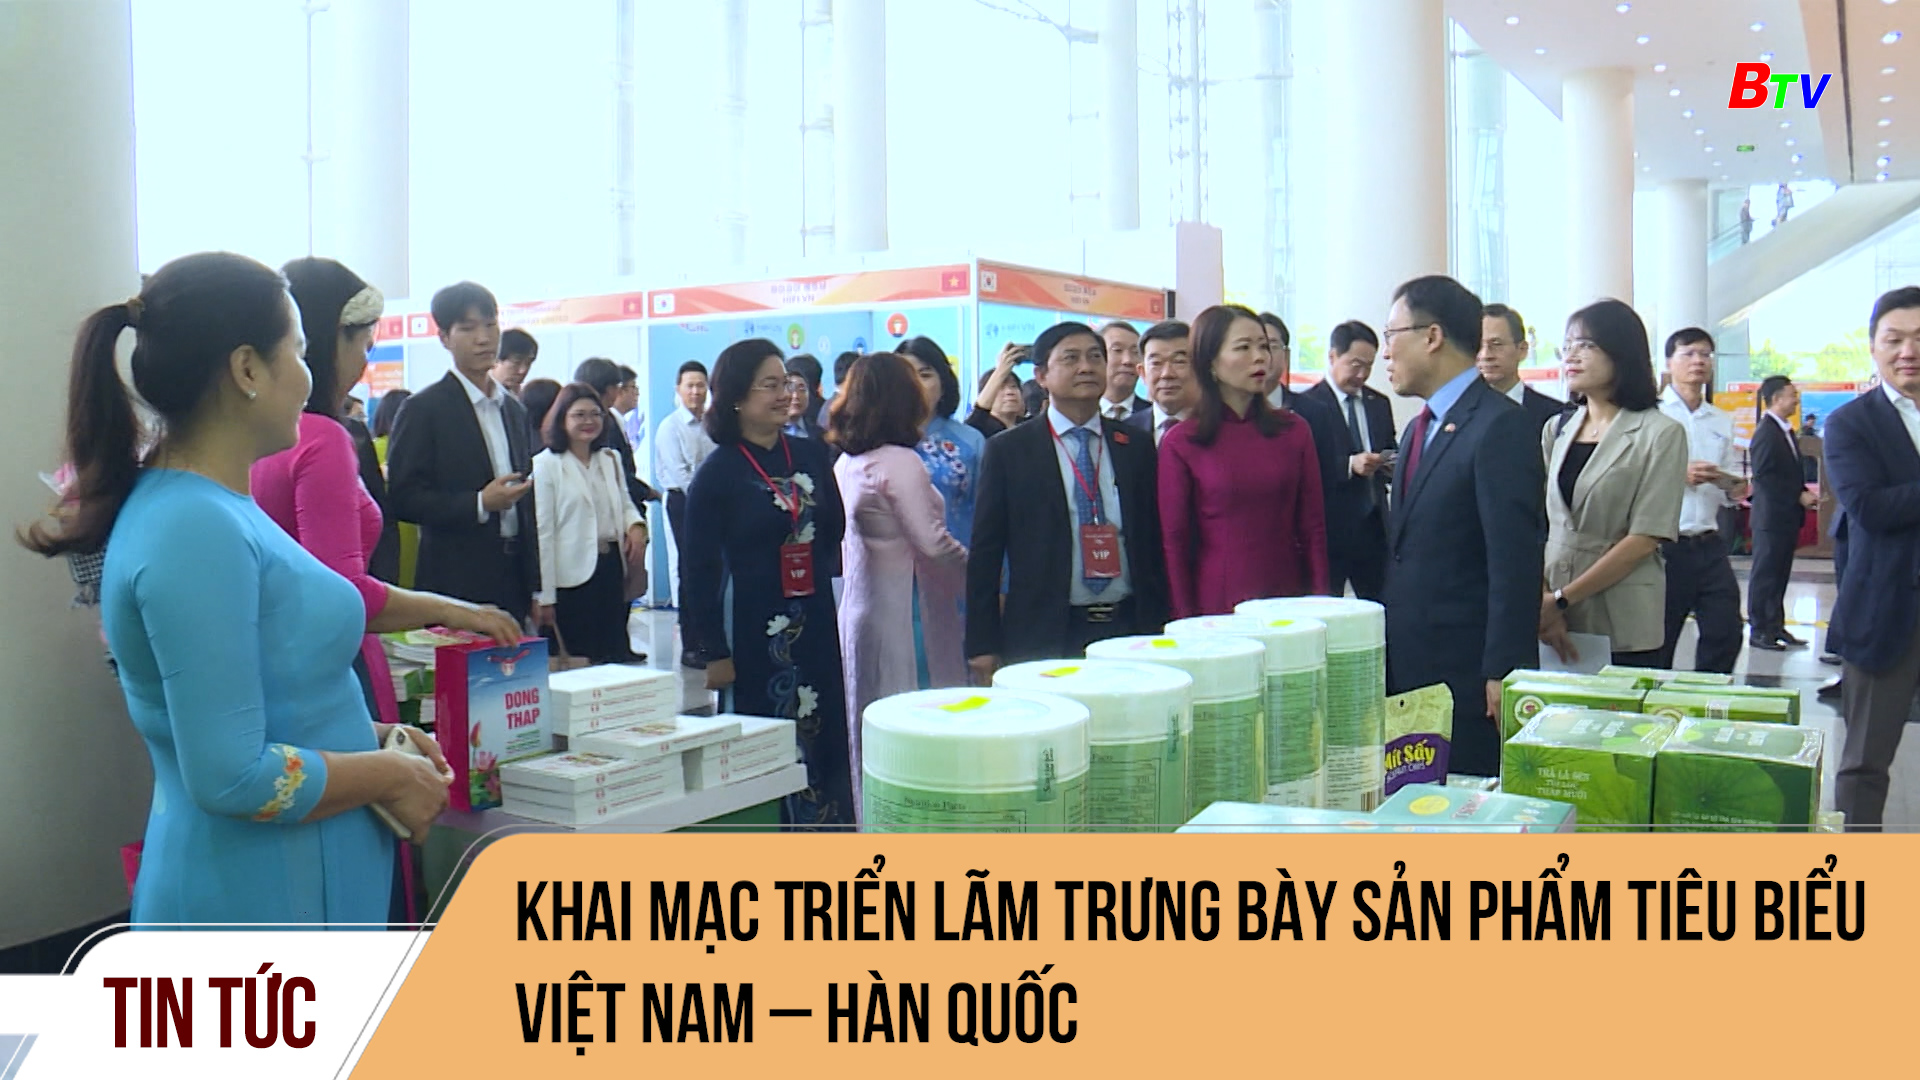 Khai mạc Triển lãm trưng bày sản phẩm tiêu biểu Việt Nam – Hàn Quốc